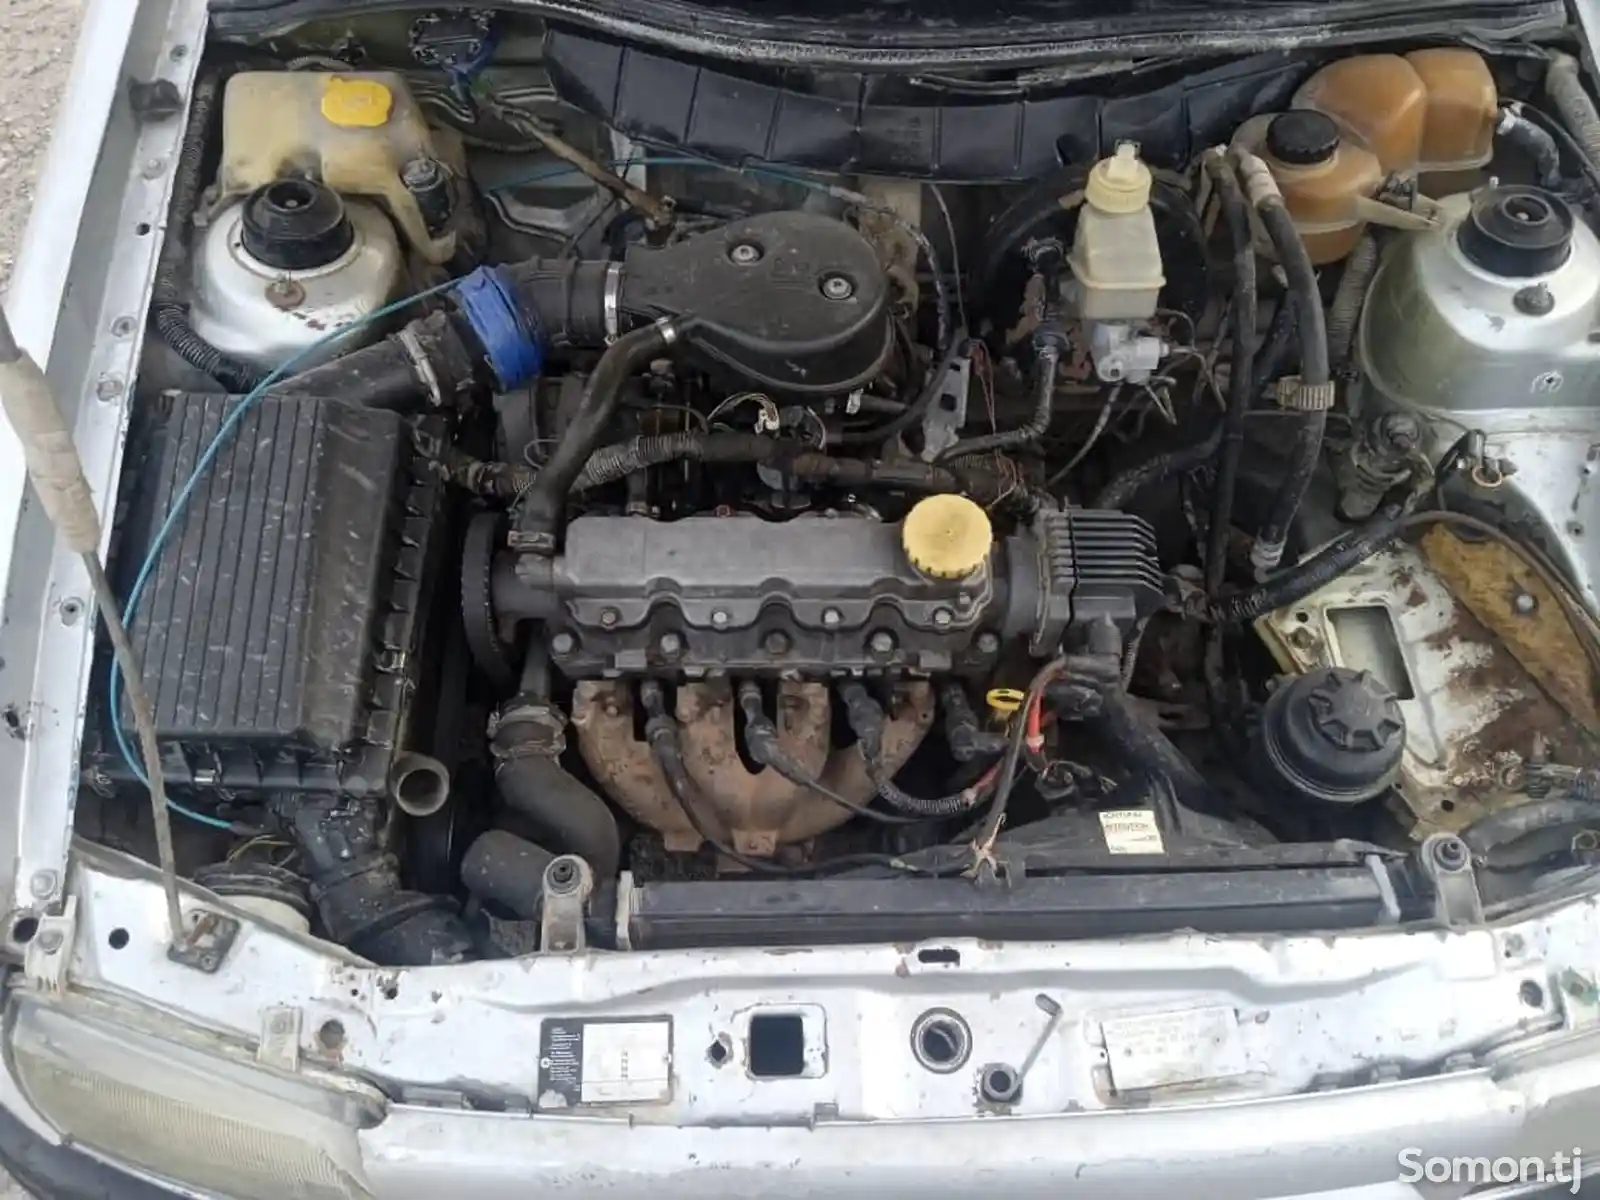 Opel Astra F, 1992-12